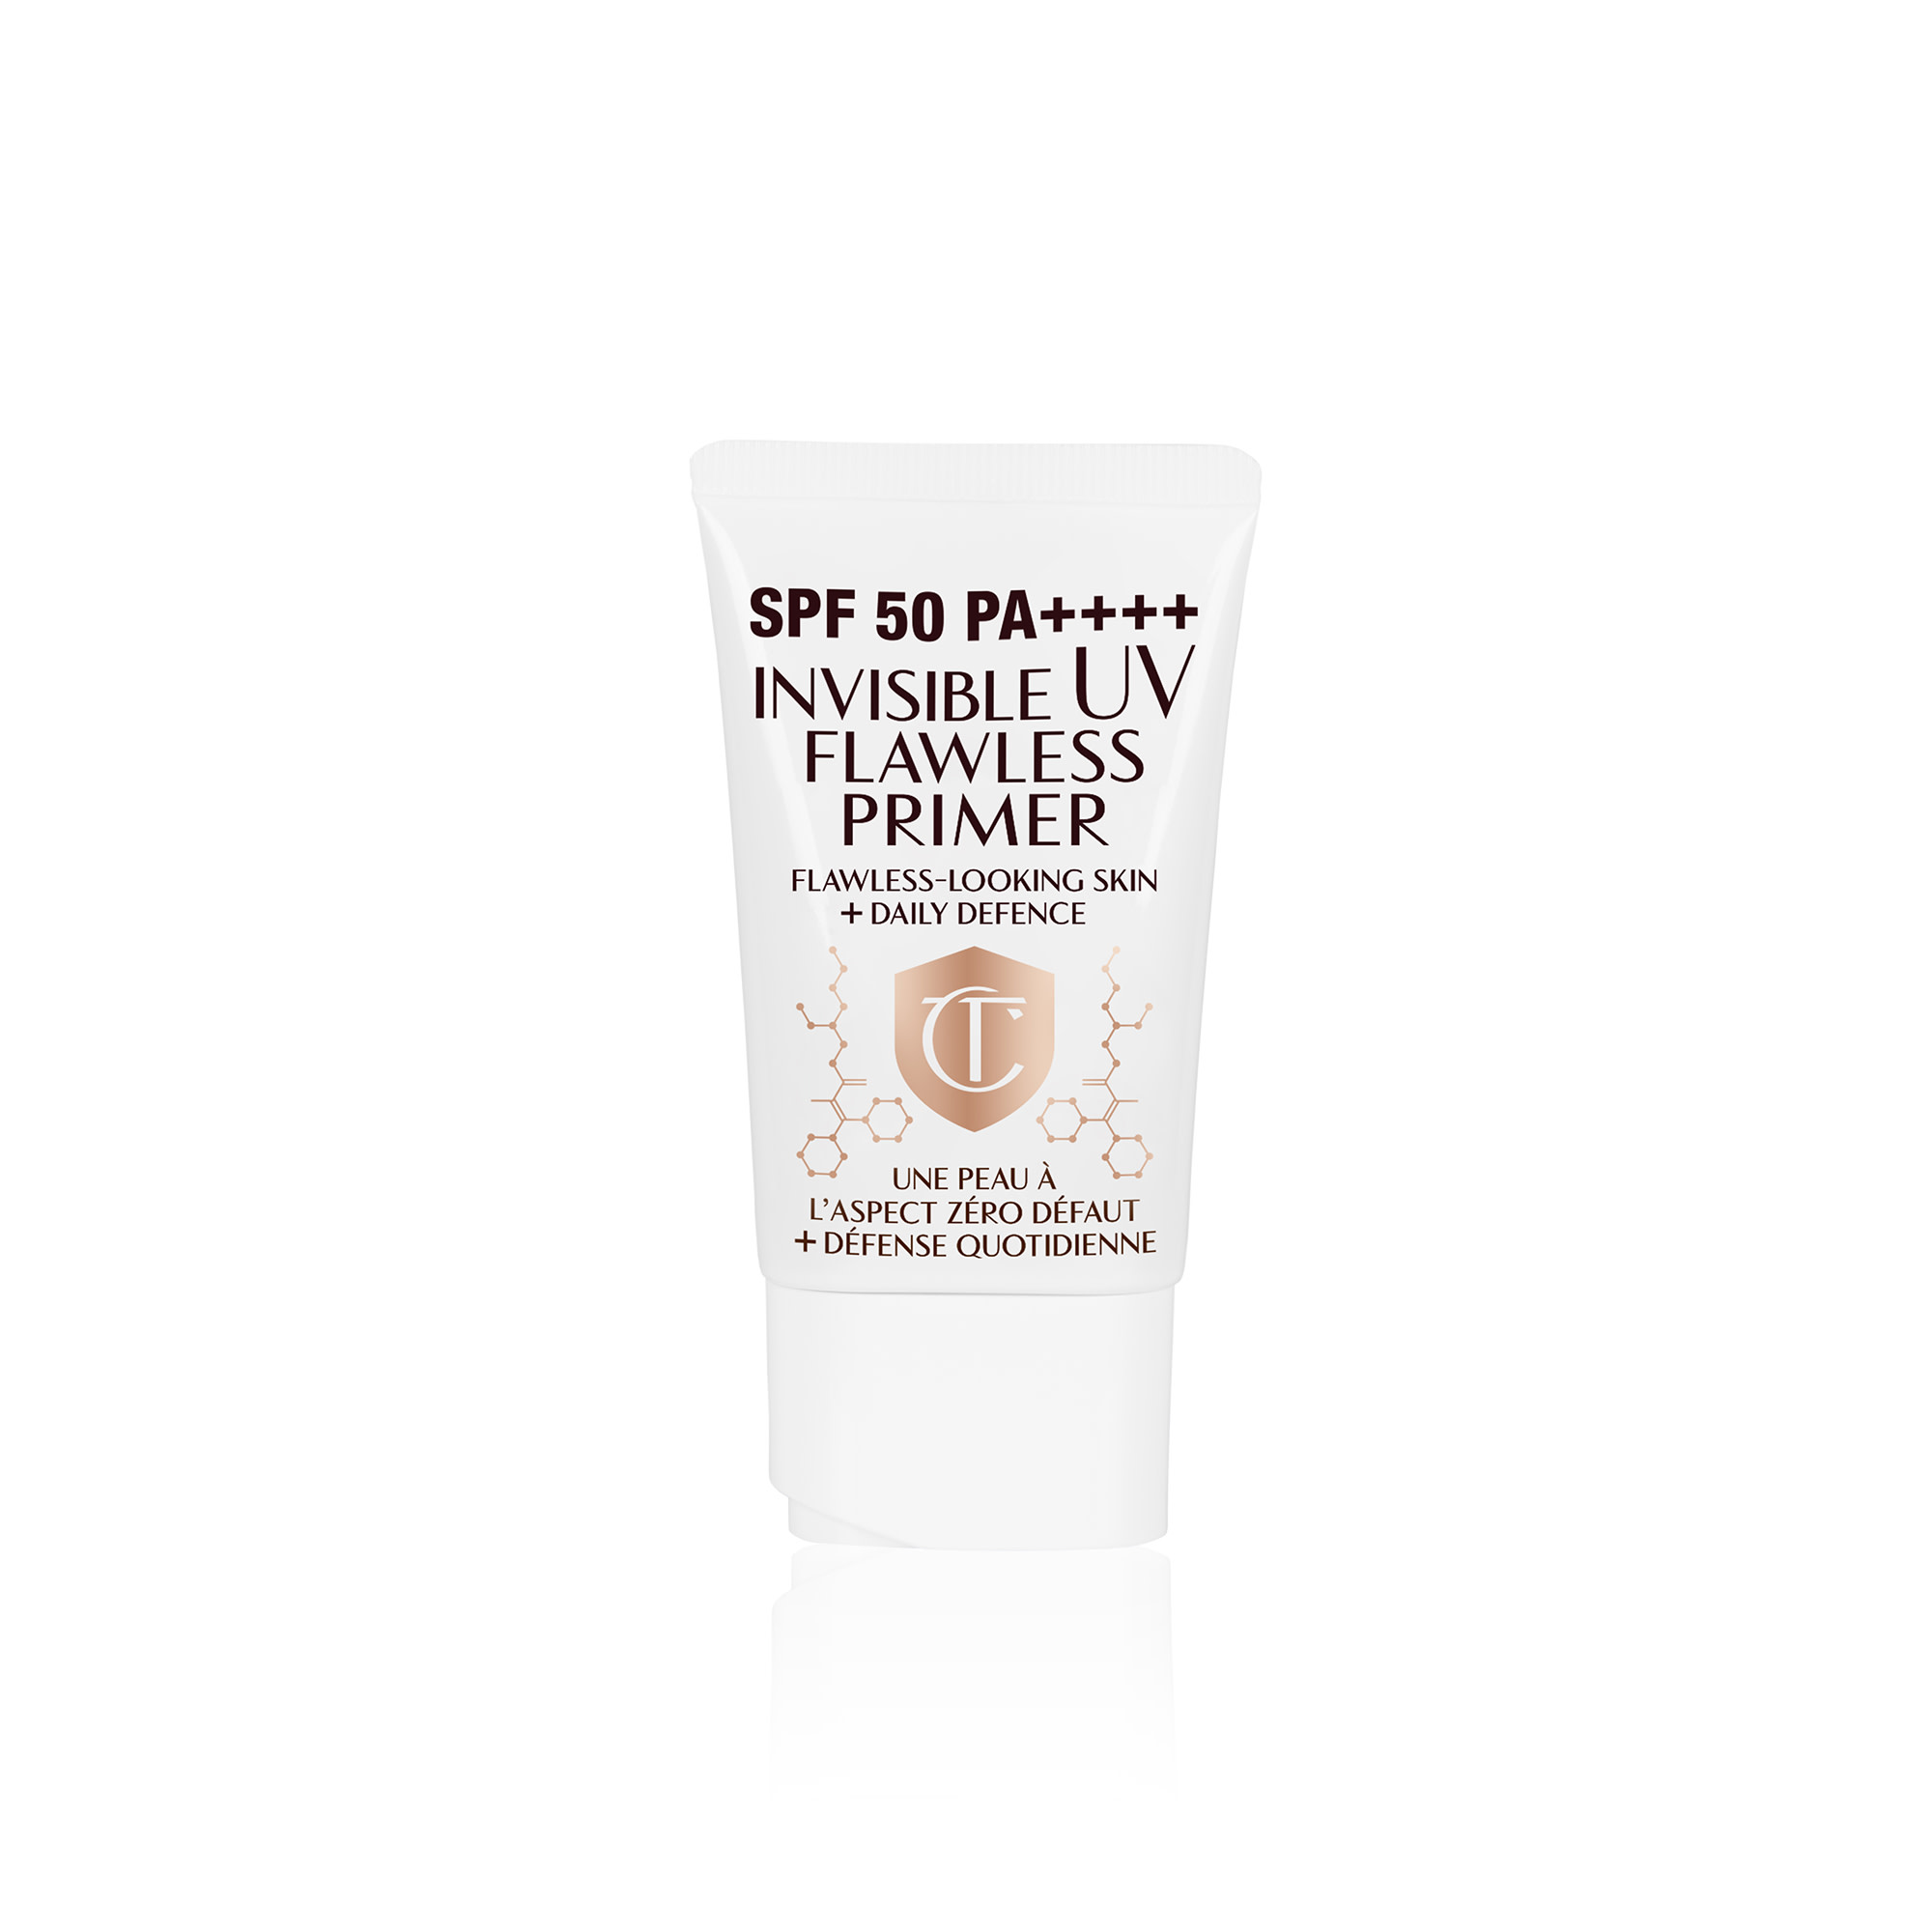 Le fond de teint UV SPF50 de Charlotte protège la peau du soleil tout en l'aidant à paraître plus lisse et sans pores.